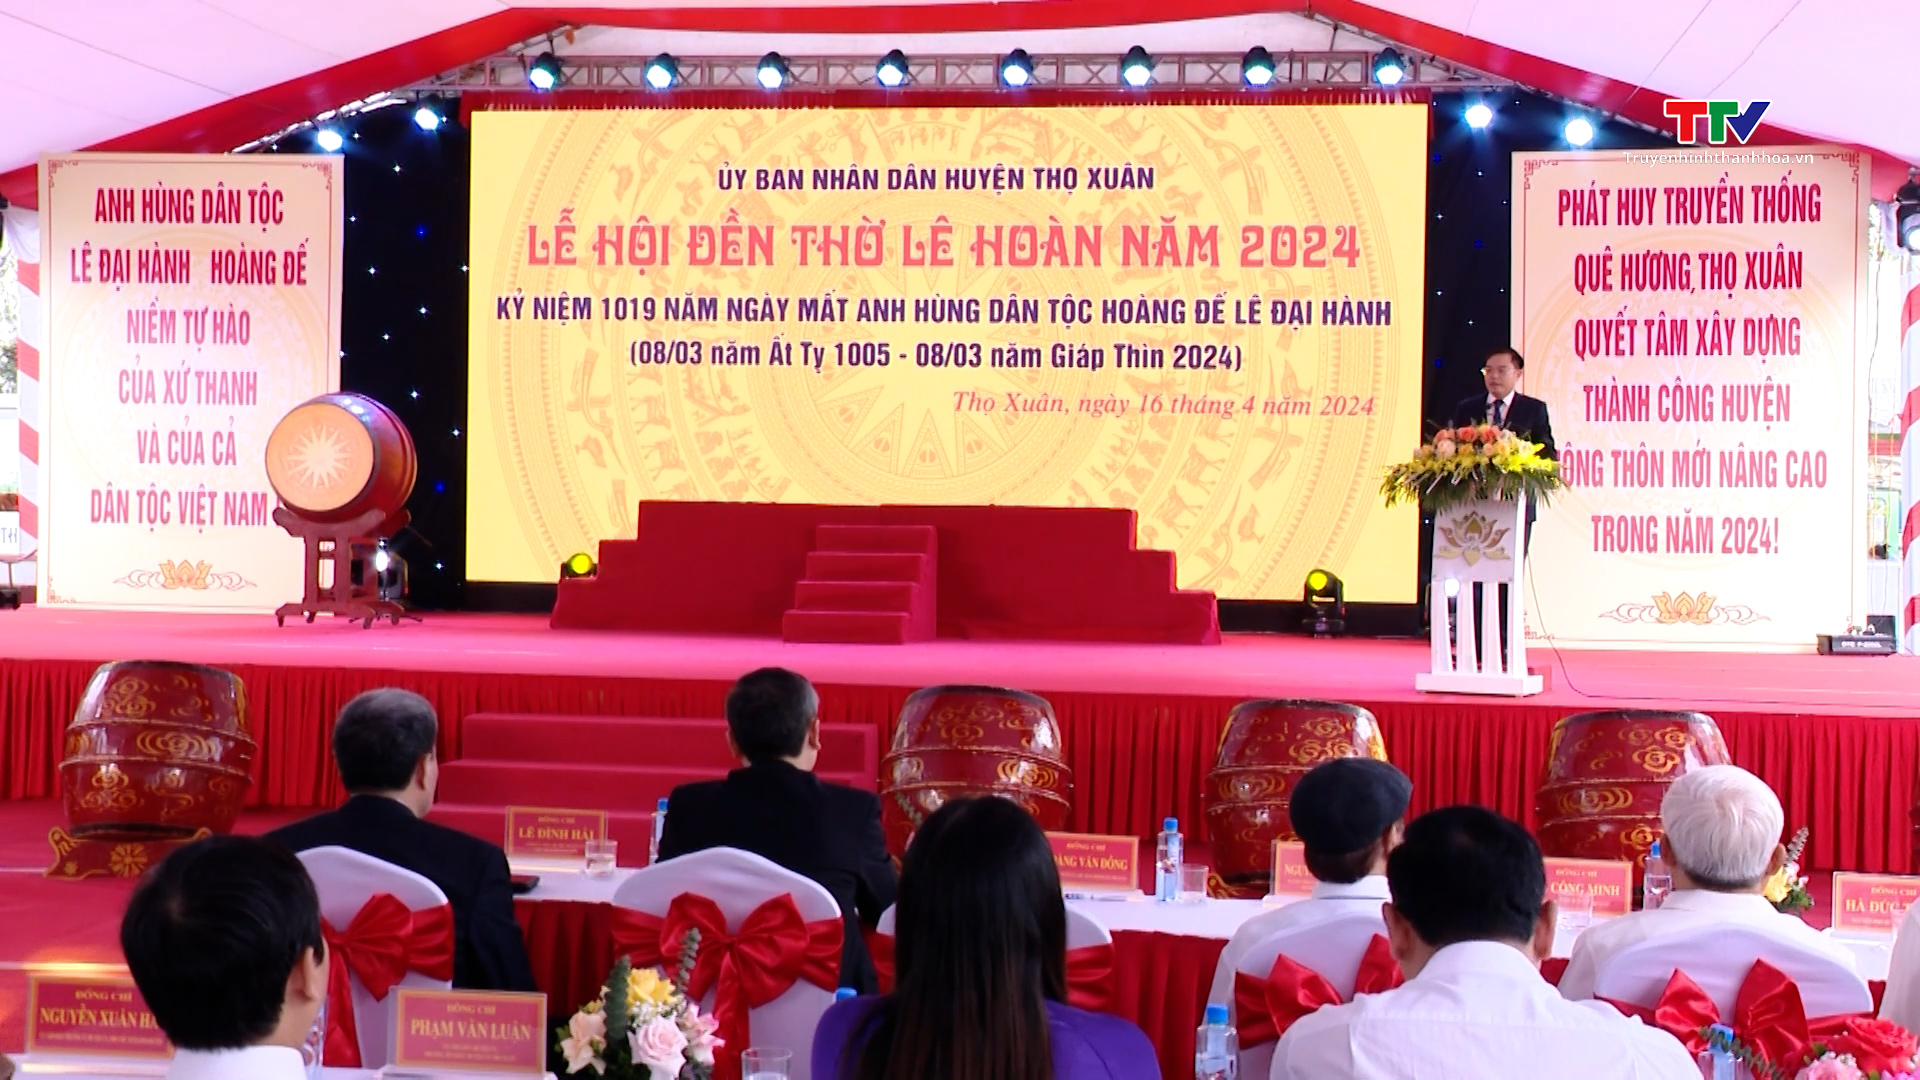 Khai mạc Lễ hội Đền thờ Lê Hoàn năm 2024- Ảnh 2.